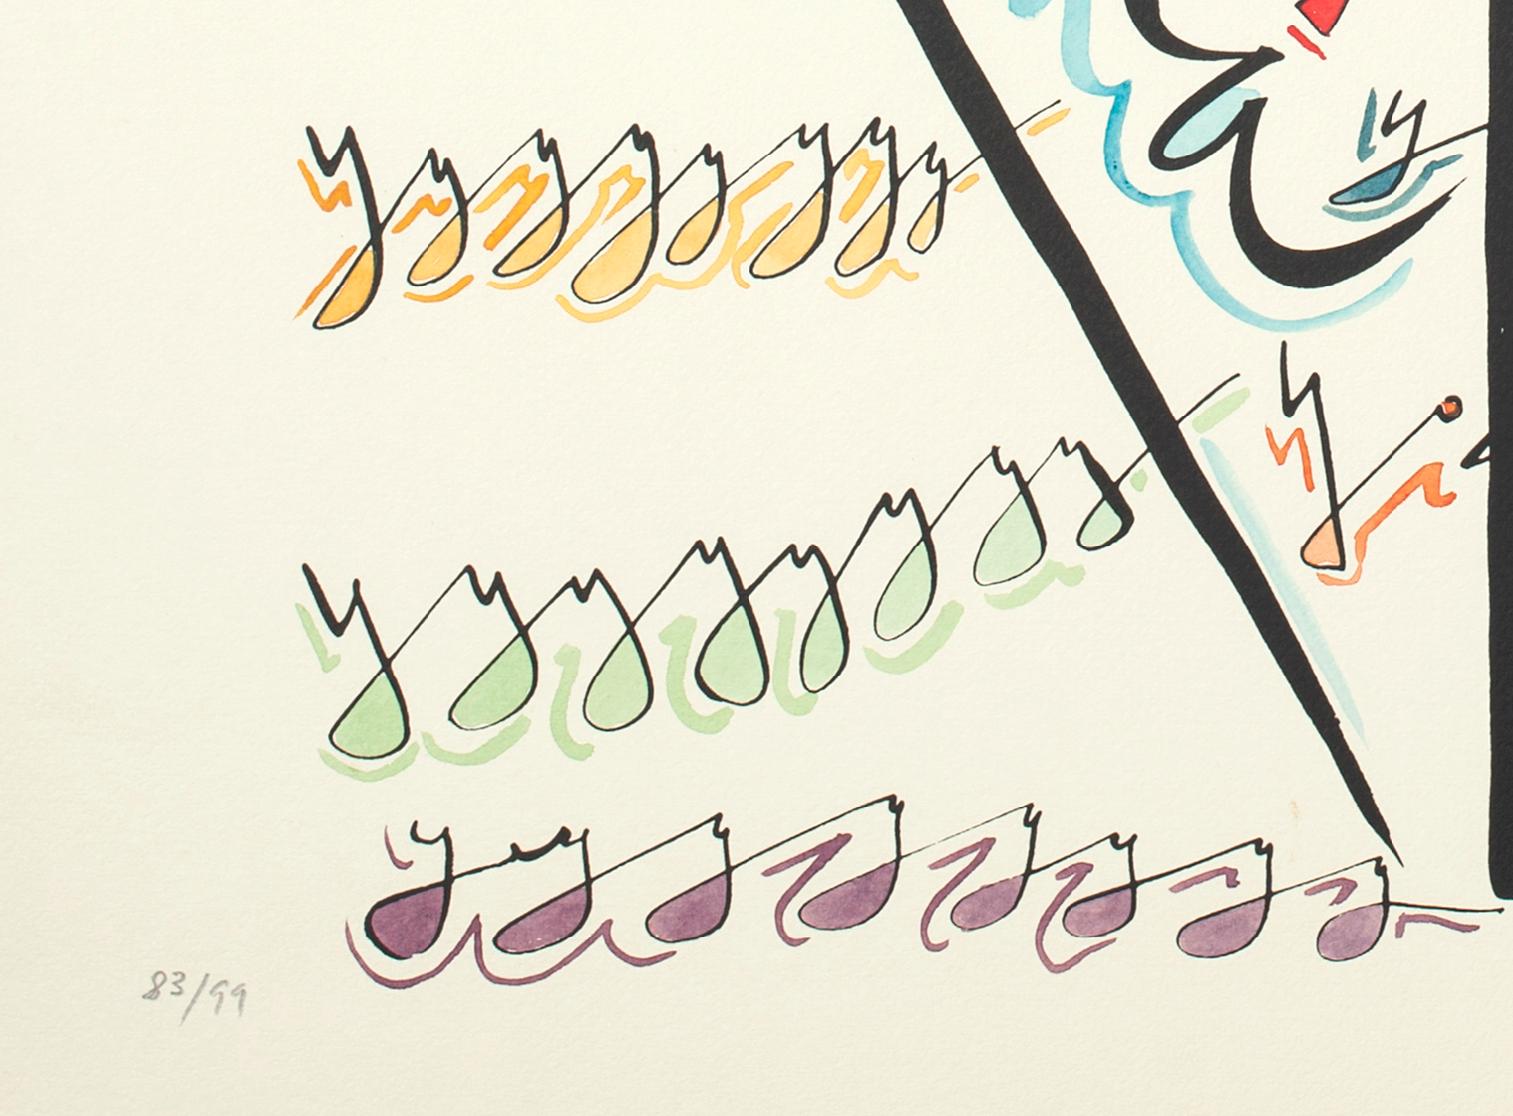 Lettre Y - Lithographie colorée à la main de Raphael Alberti - 1972 - Print de Rafael Alberti